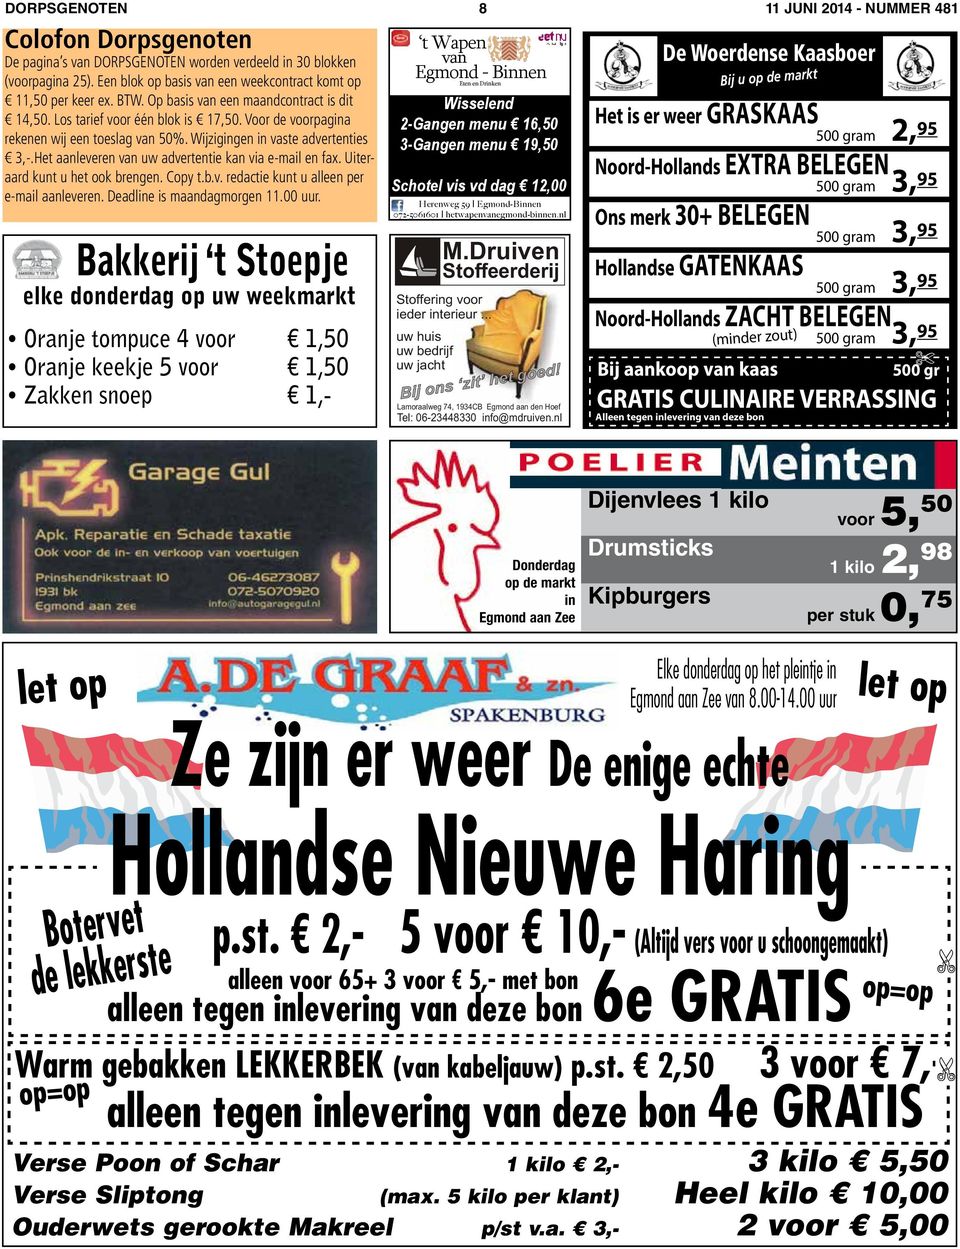 Deadline is Hollandse maandagmorgen Nieuwe 11.00 uur. Haring p.st.